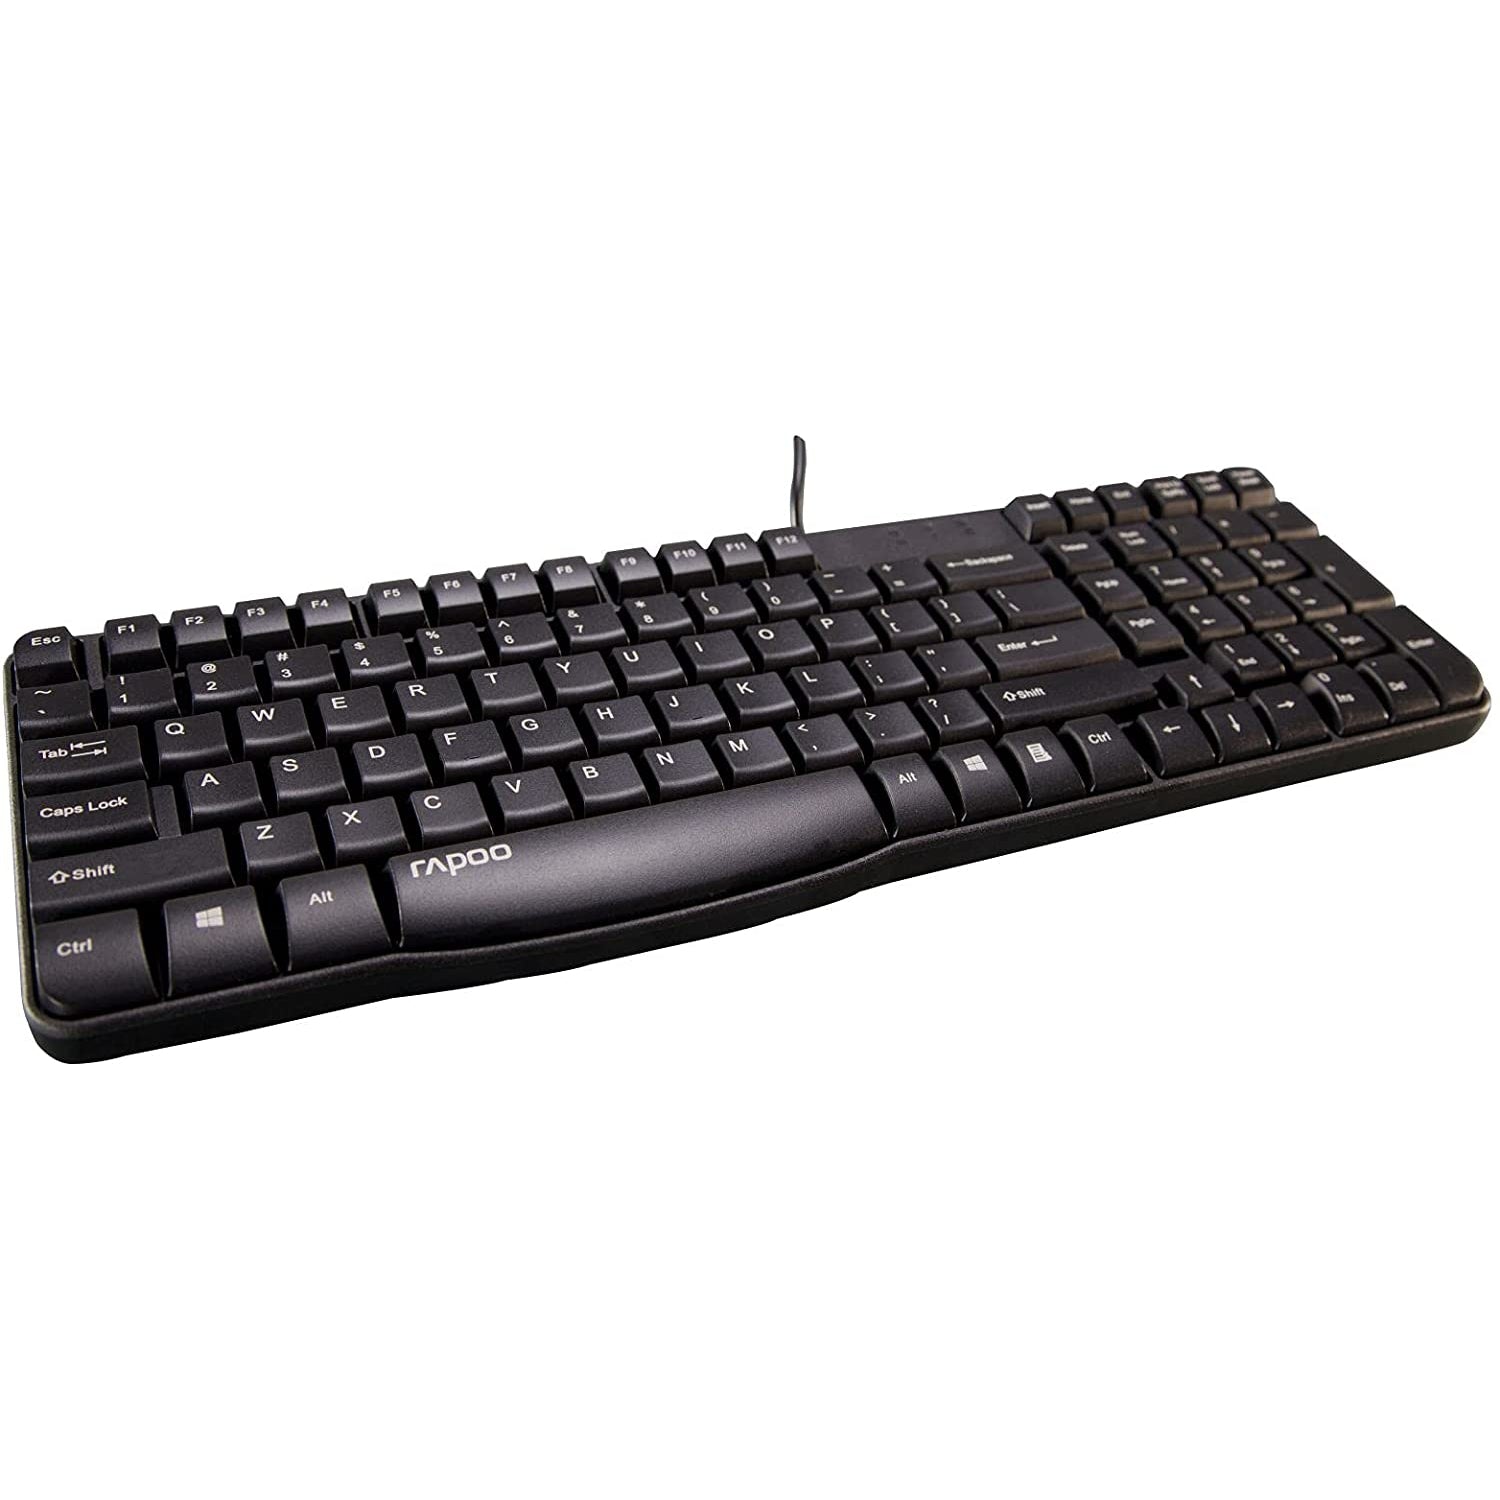 Rapoo N2400 Wired Spill-Resistant Keyboard, Black - Refurbished Pristine